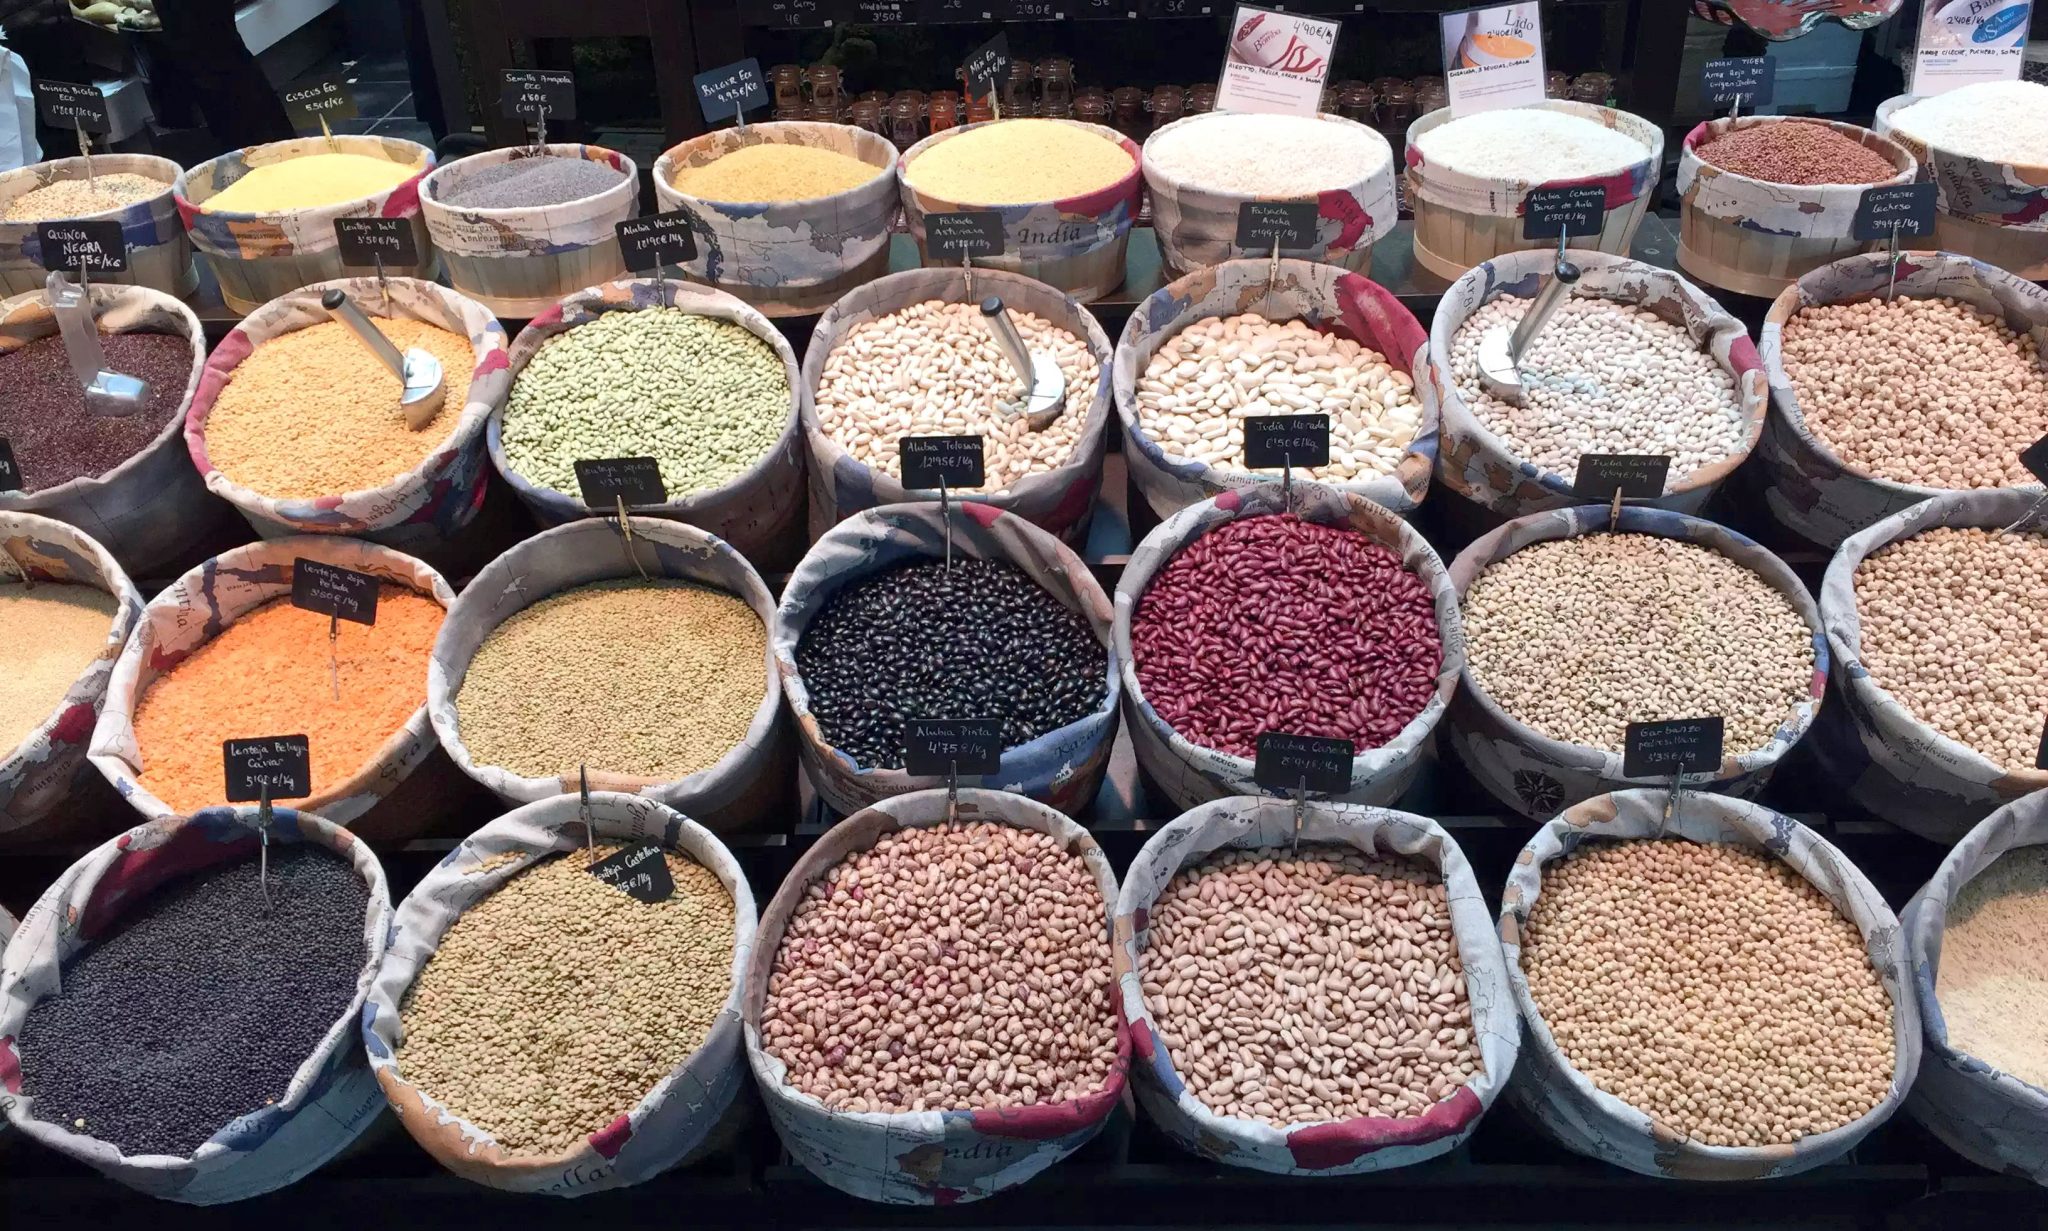 Best Food Markets In Madrid by Emma Eats & Explores - Mercado San Anton